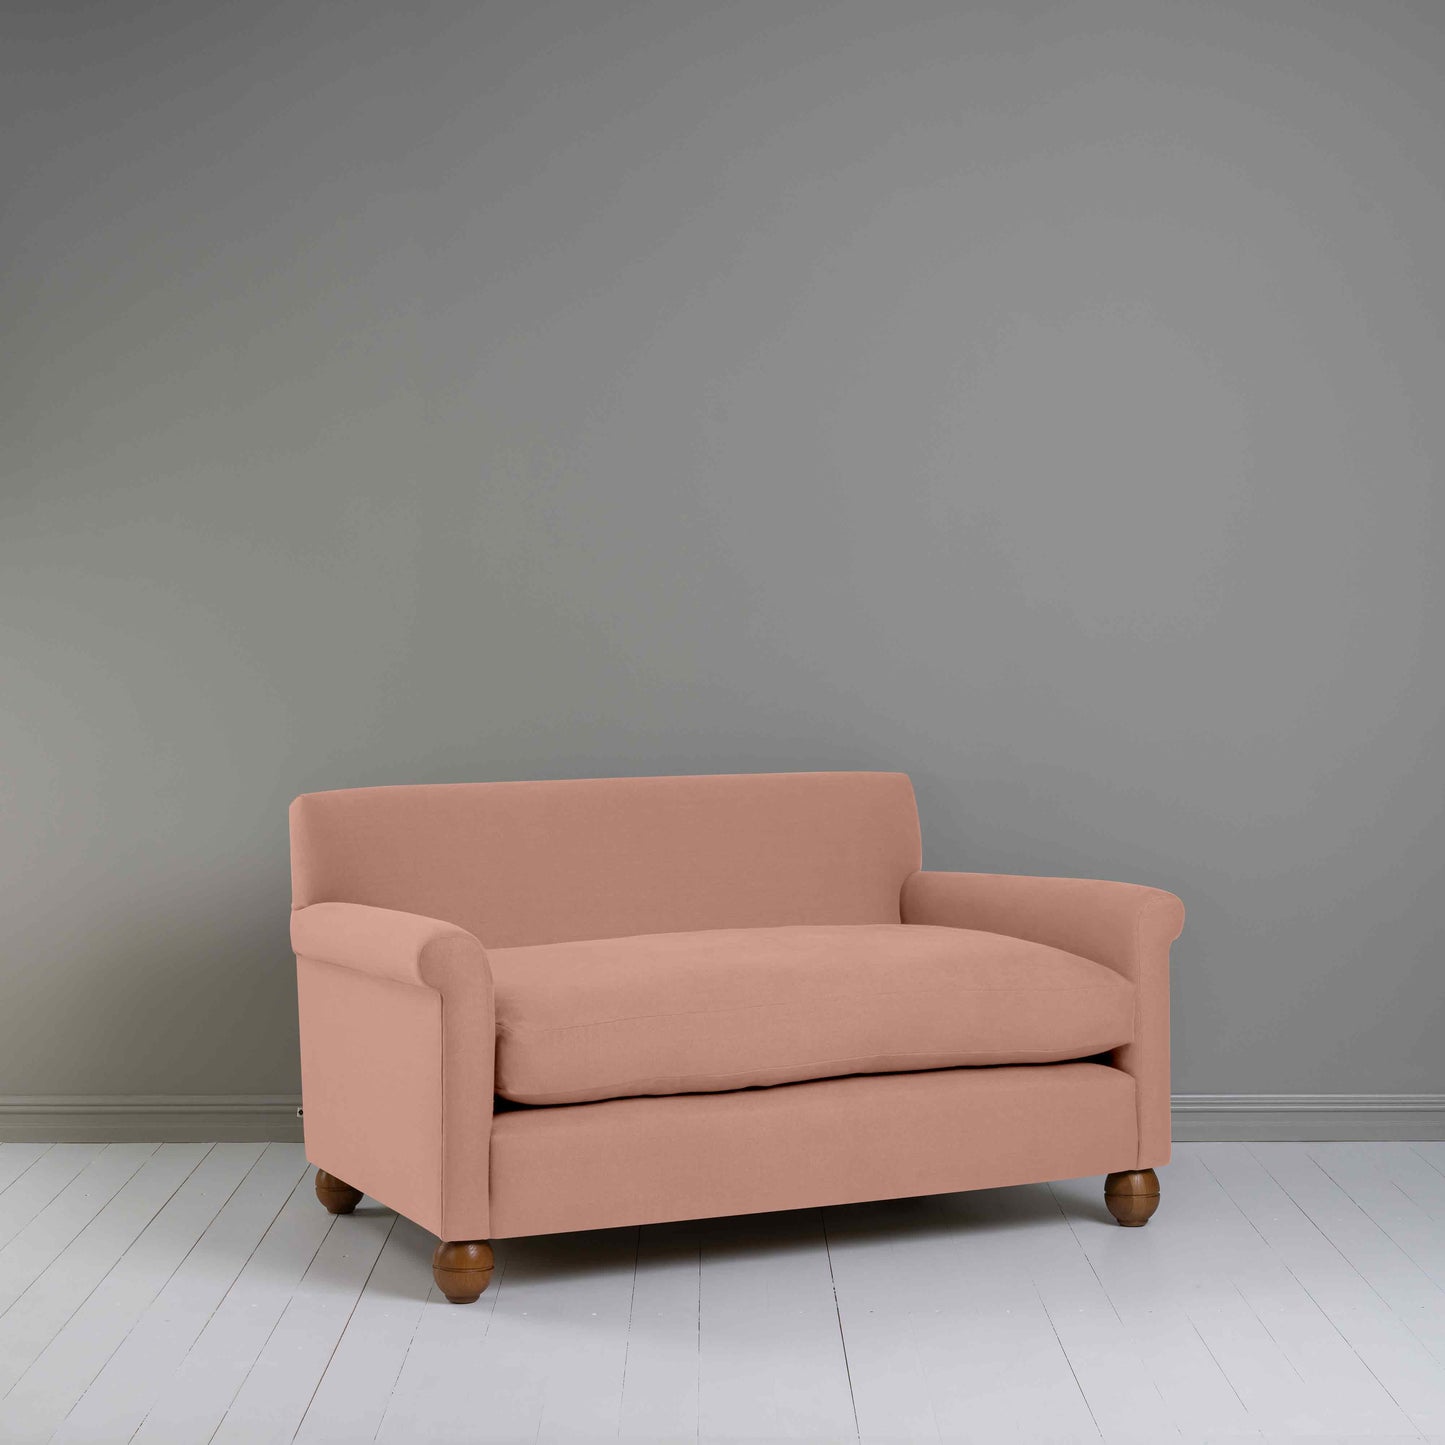 Idler 2 Seater Sofa in Laidback Linen Roseberry